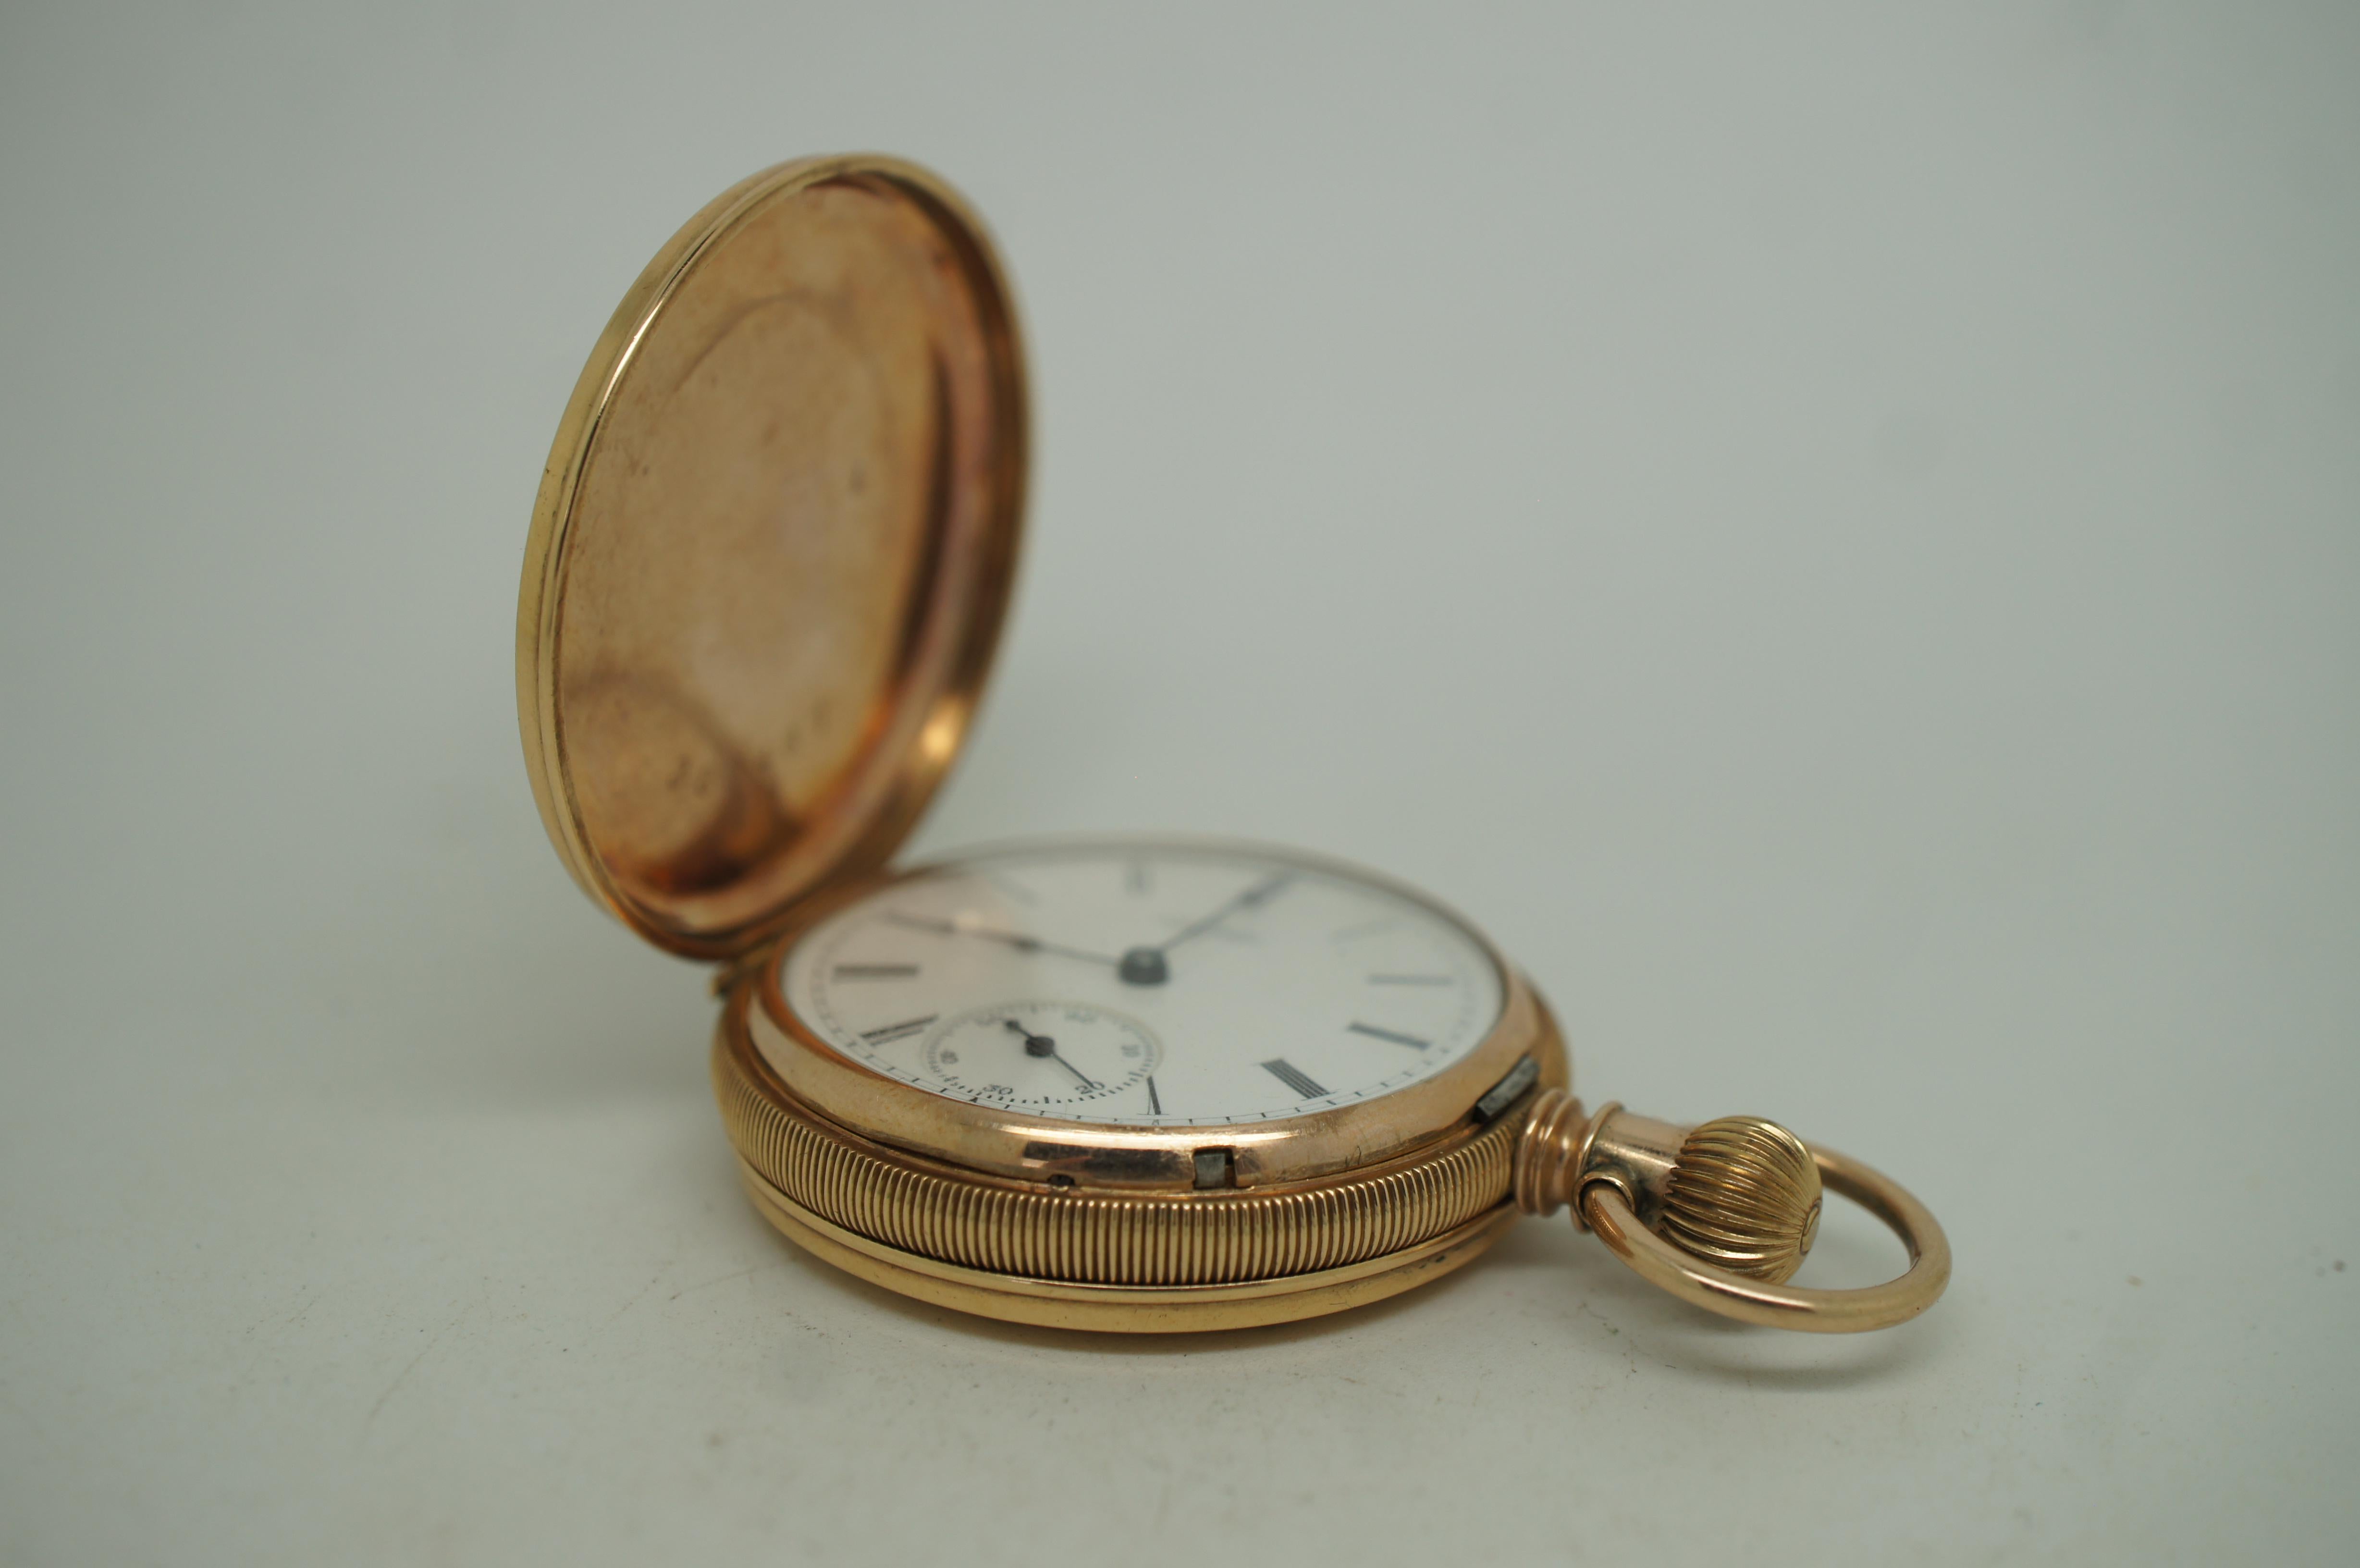 1888 Elgin National 14K Gold 11J Pocket Watch Brooklyn Hunt 6s 54g For Sale 5